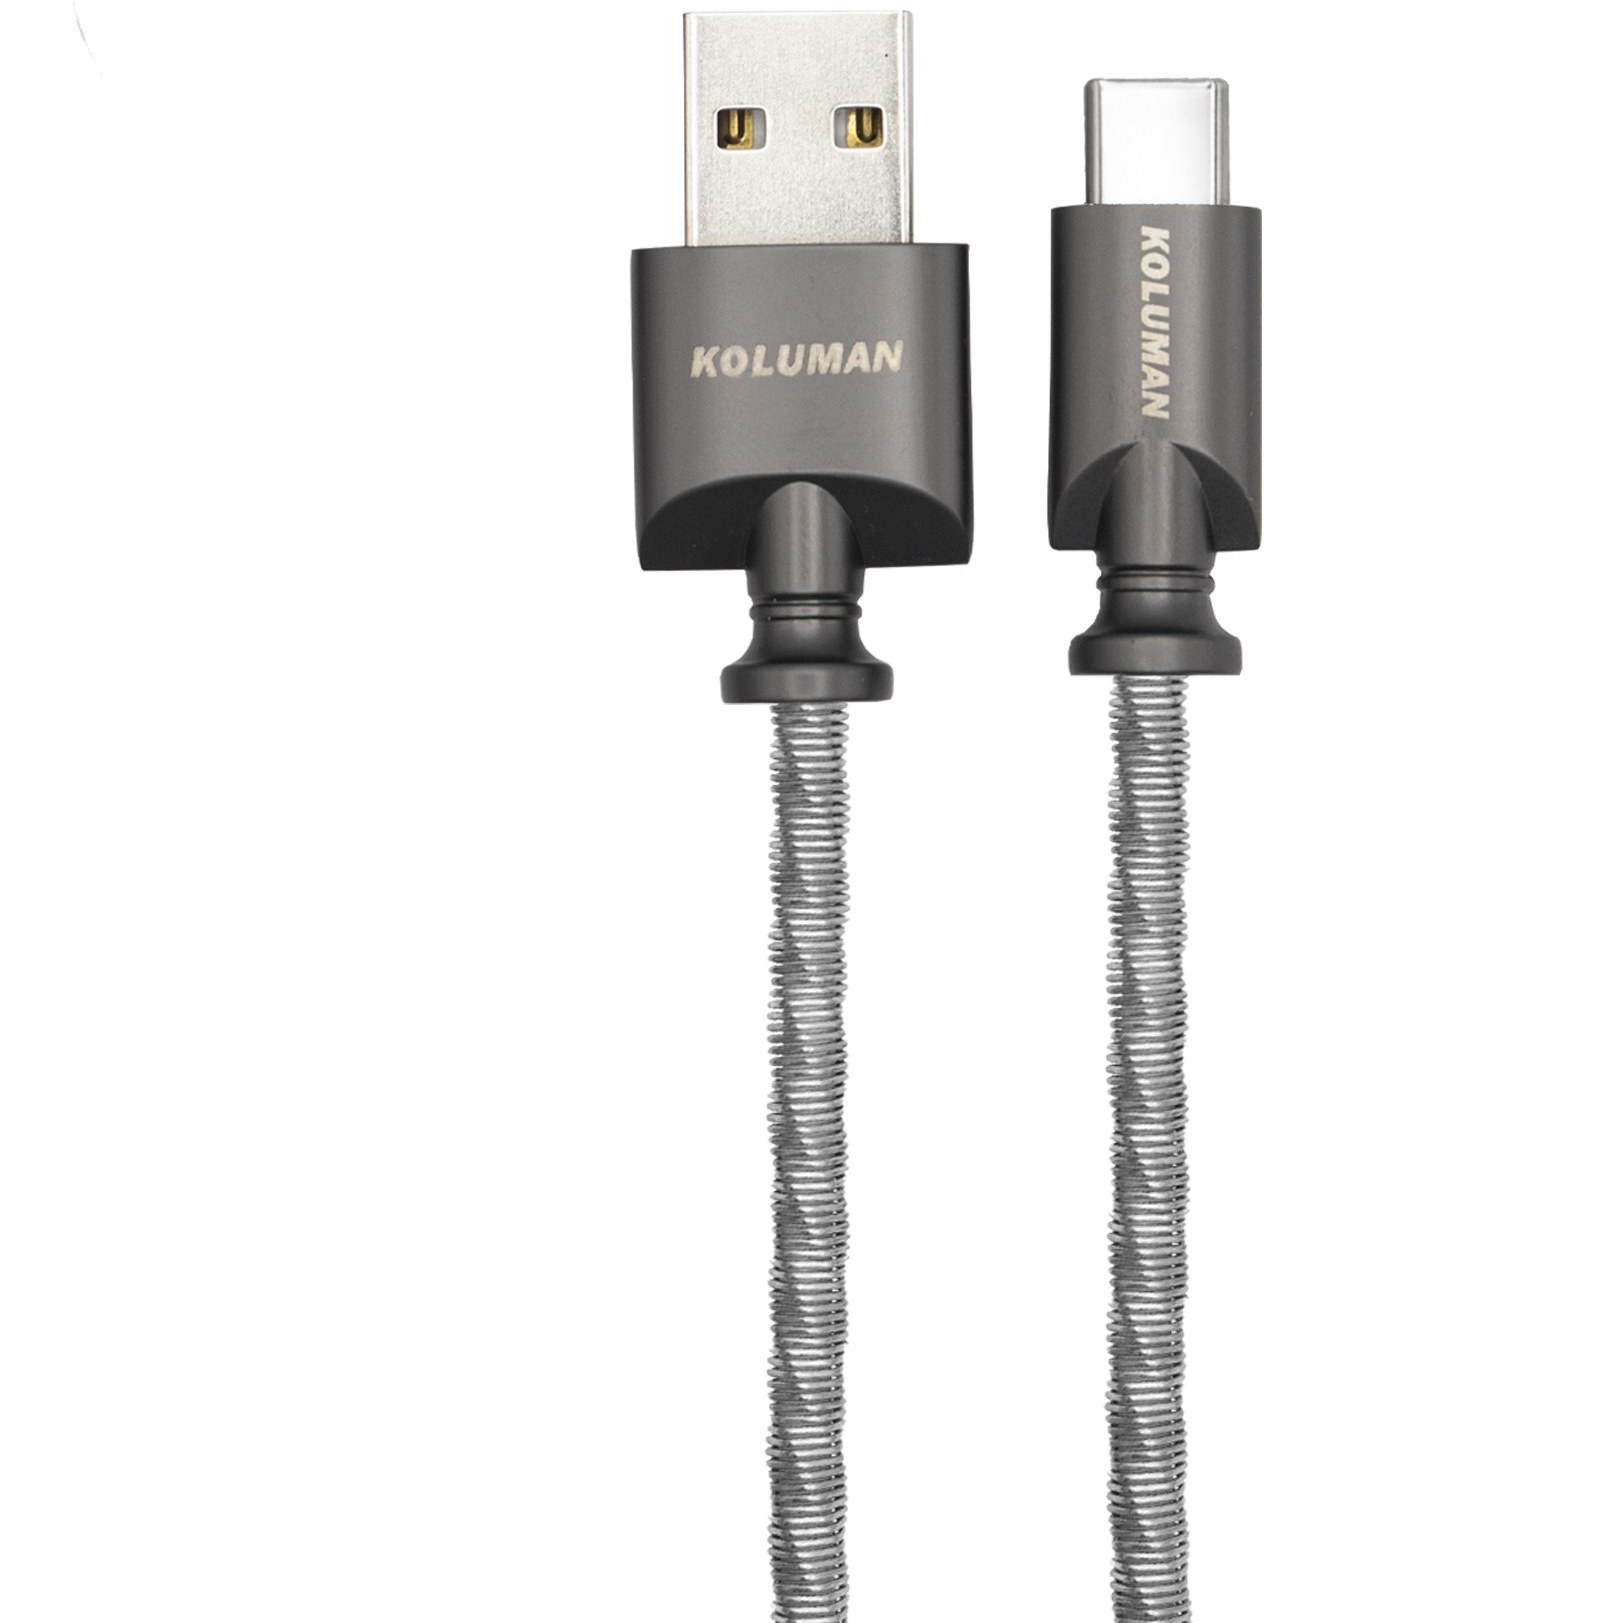 خرید و قیمت کابل تبدیل USB به USB - C کلومن مدل DK - 21 طول 1 متر | ترب